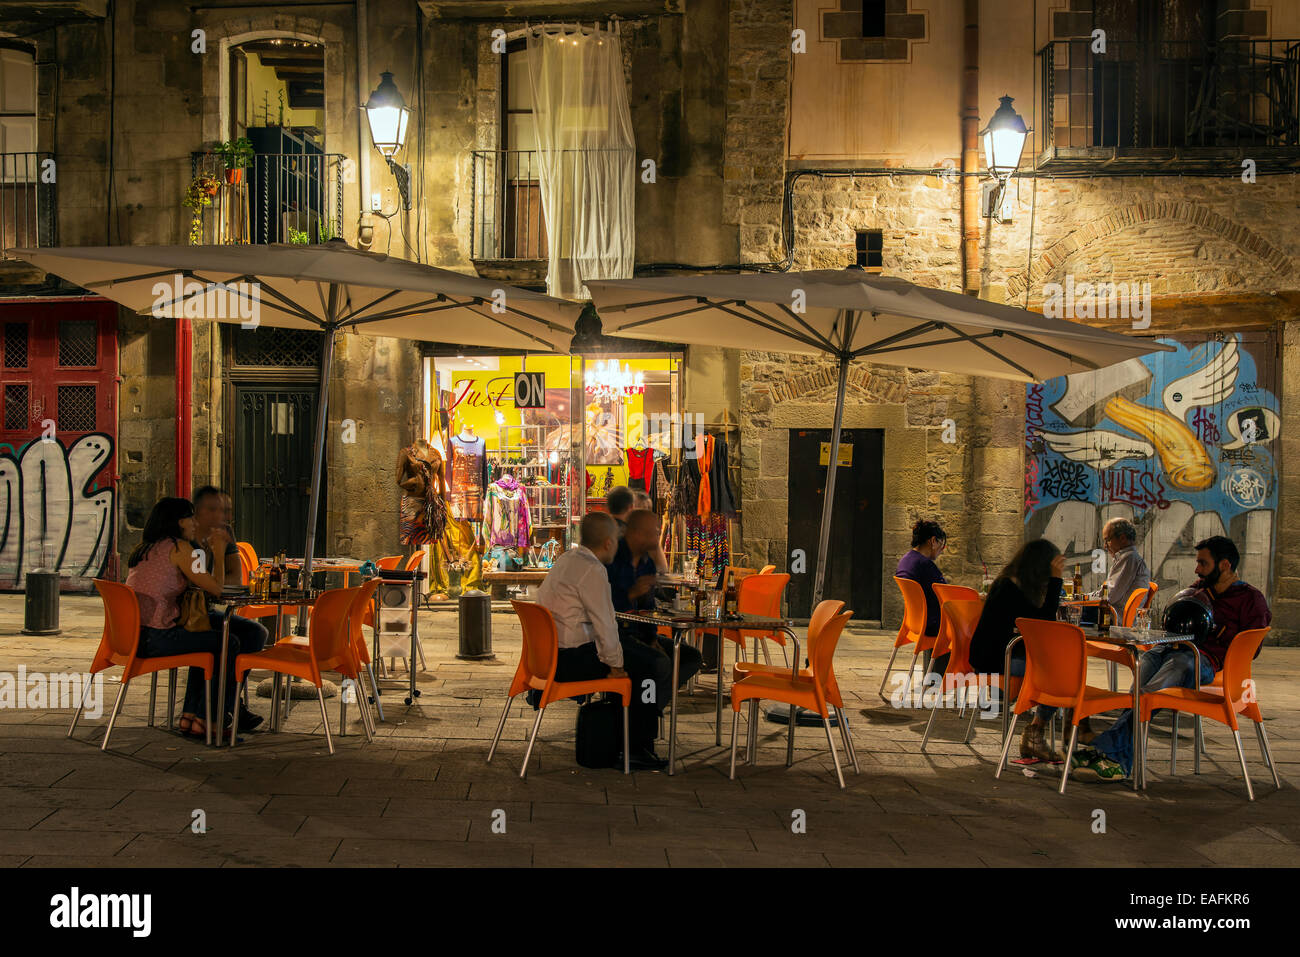 Vue de nuit sur un Barrio Gotico café en plein air avec les touristes assis, Barcelone, Catalogne, Espagne Banque D'Images